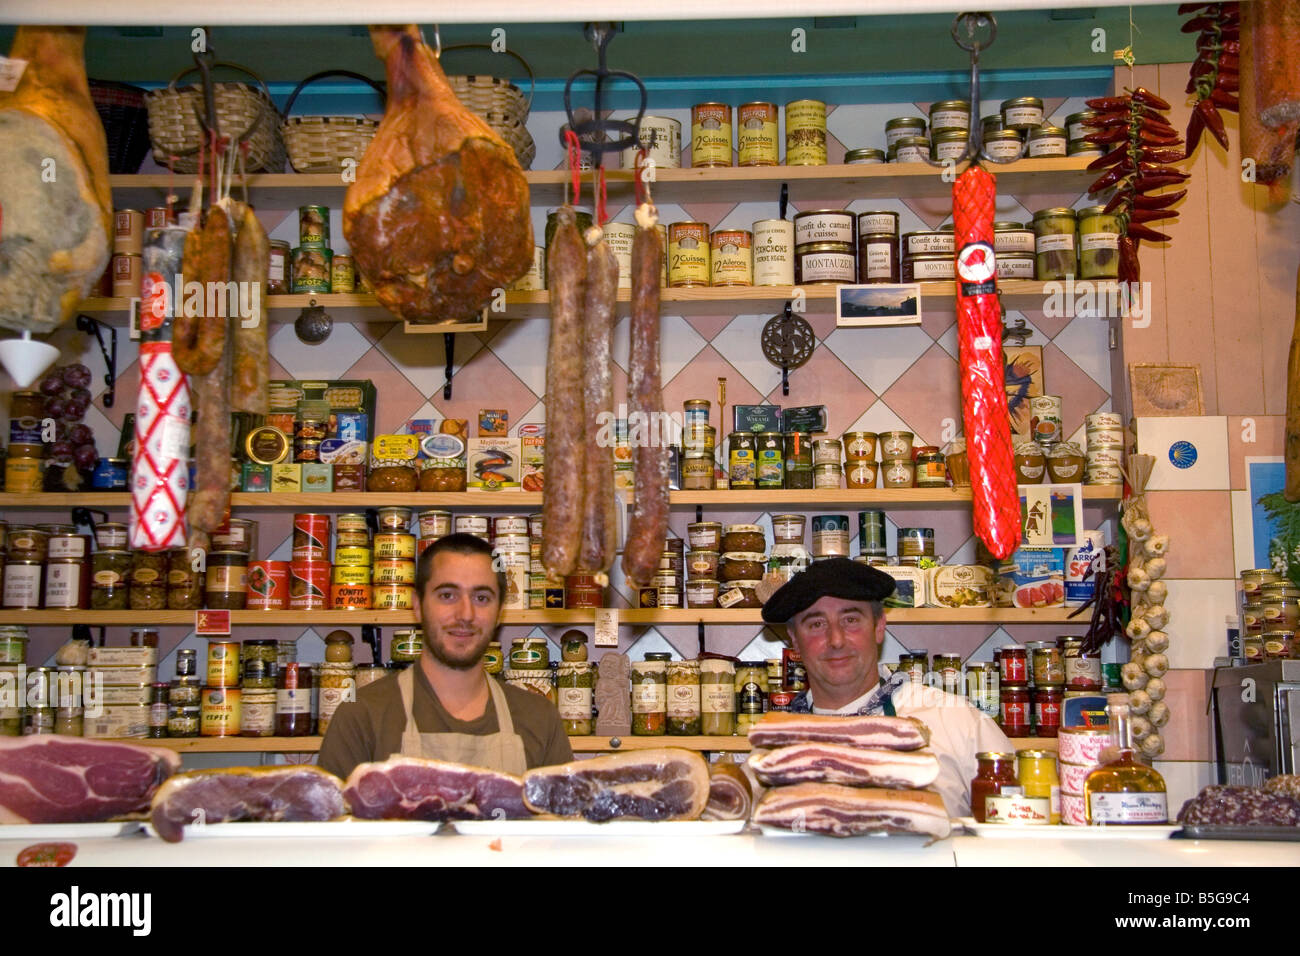 Basco francese uomini al lavoro in un negozio di formaggi e carni nella città di Saint Jean de Luz a sud-ovest della Francia Foto Stock